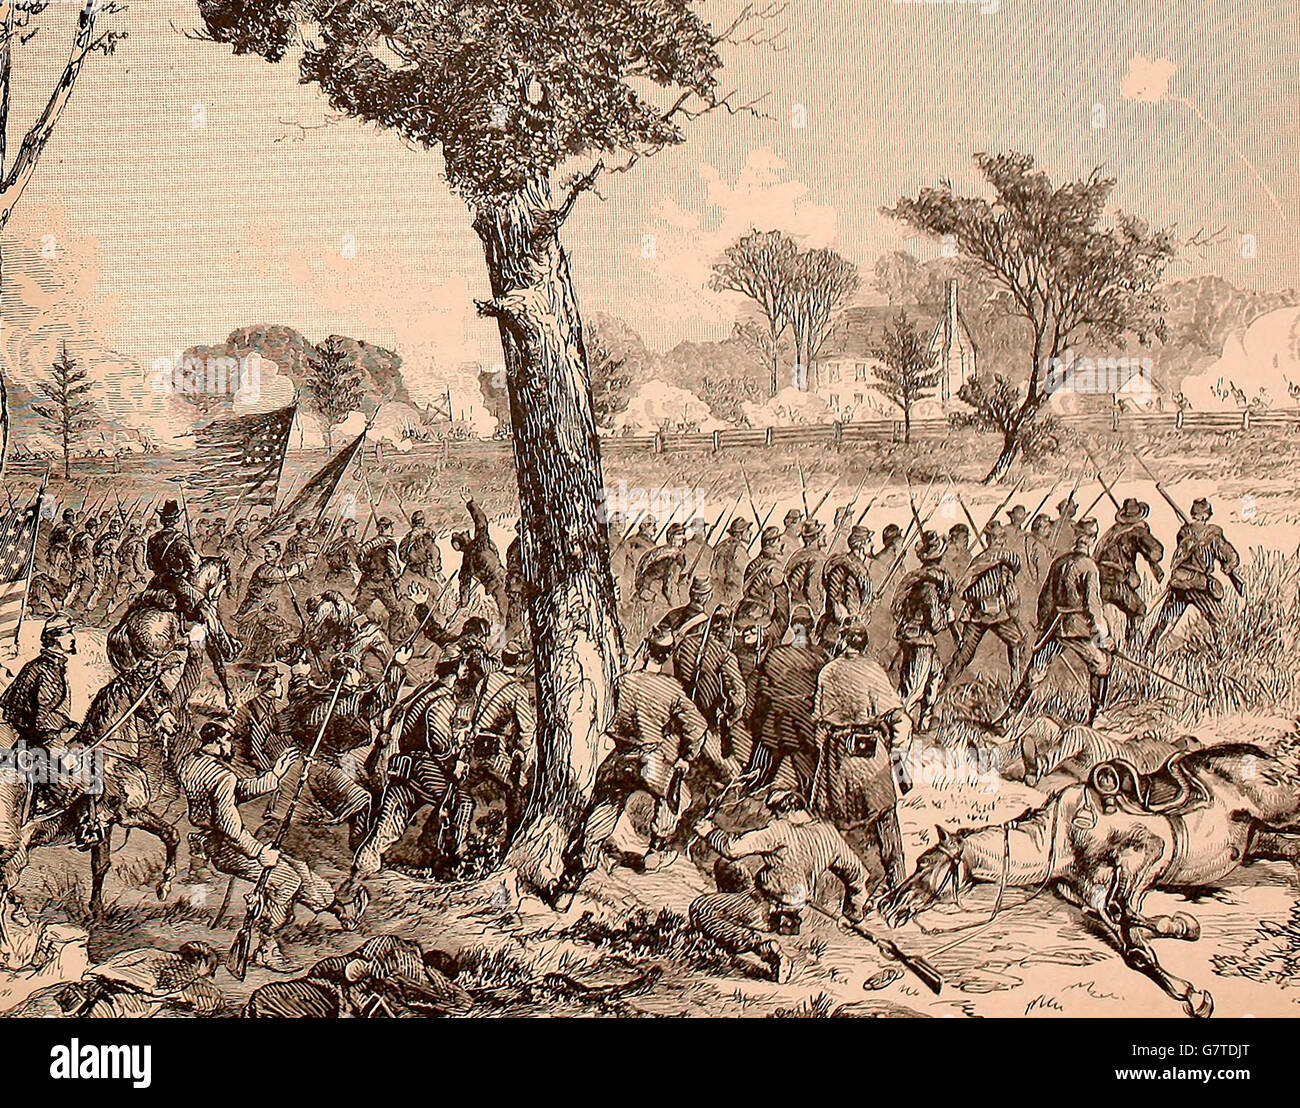 La bataille de Cold Harbor, en Virginie. La dix-huitième conduite Corps les forces de Longstreet à partir de leur première ligne de tirailleurs. 1 juin 1864. Guerre civile USA Banque D'Images